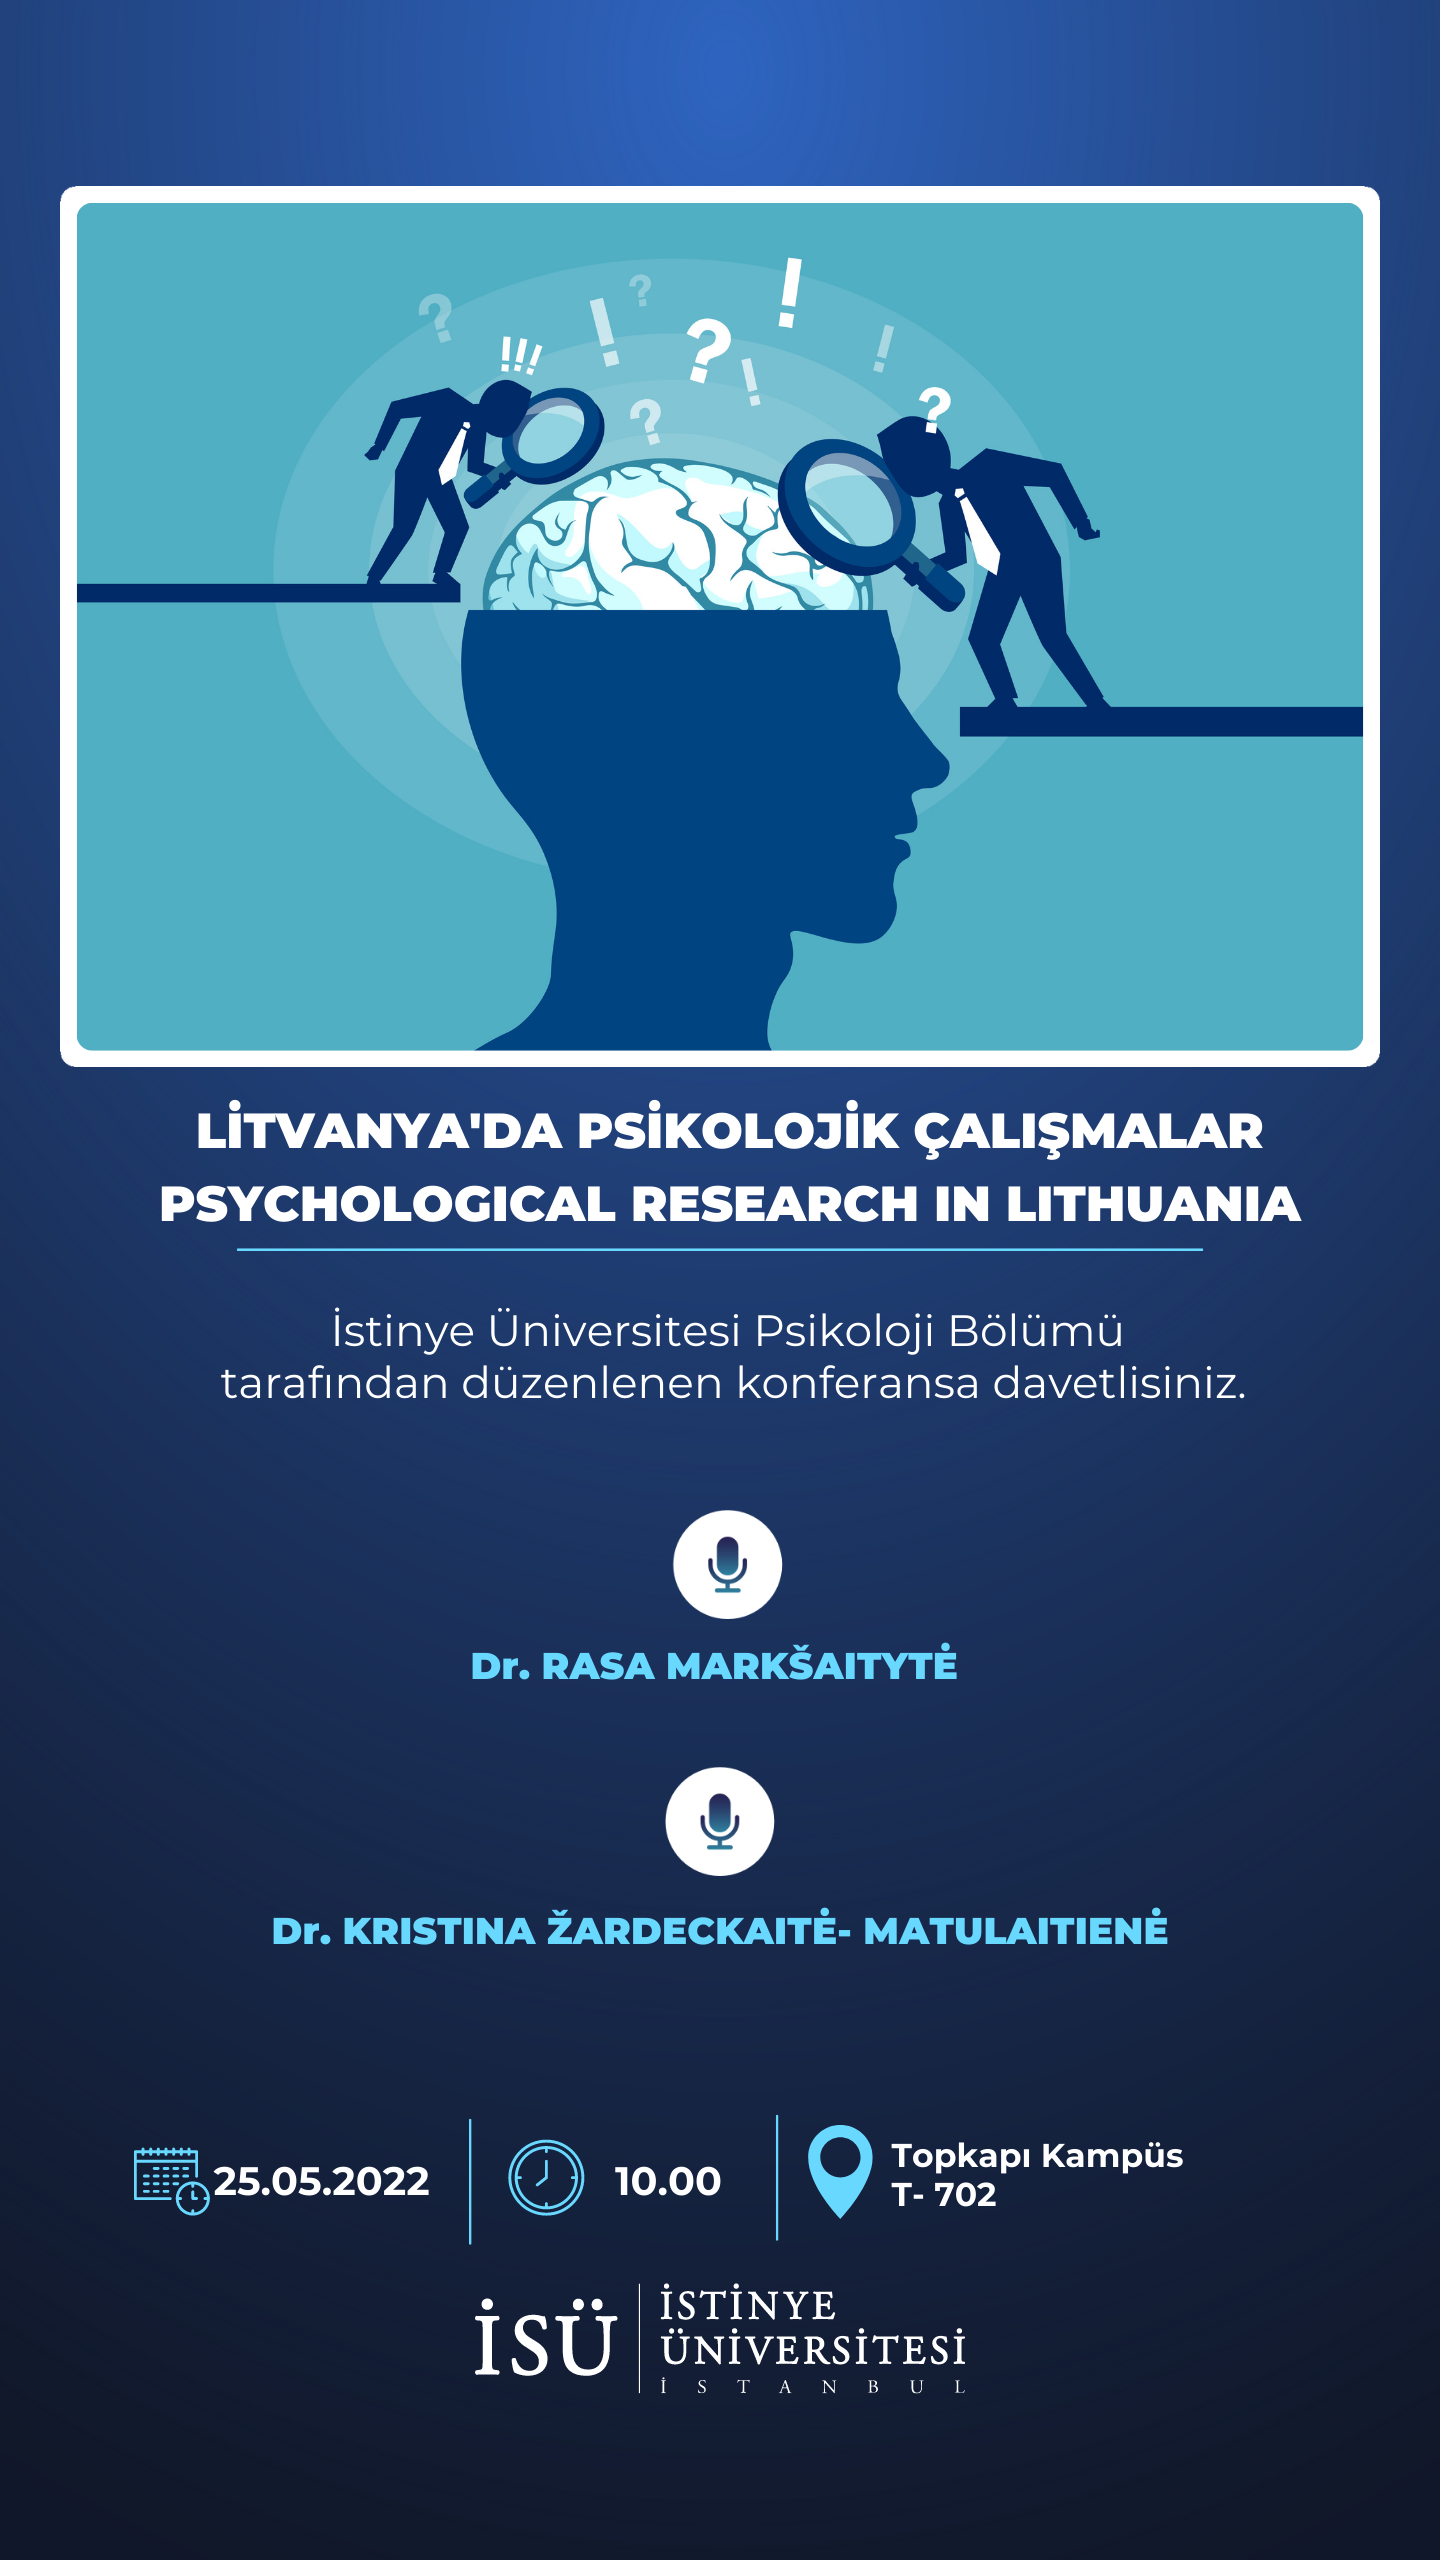 Litvanya'da Psikolojik Çalışmalar 